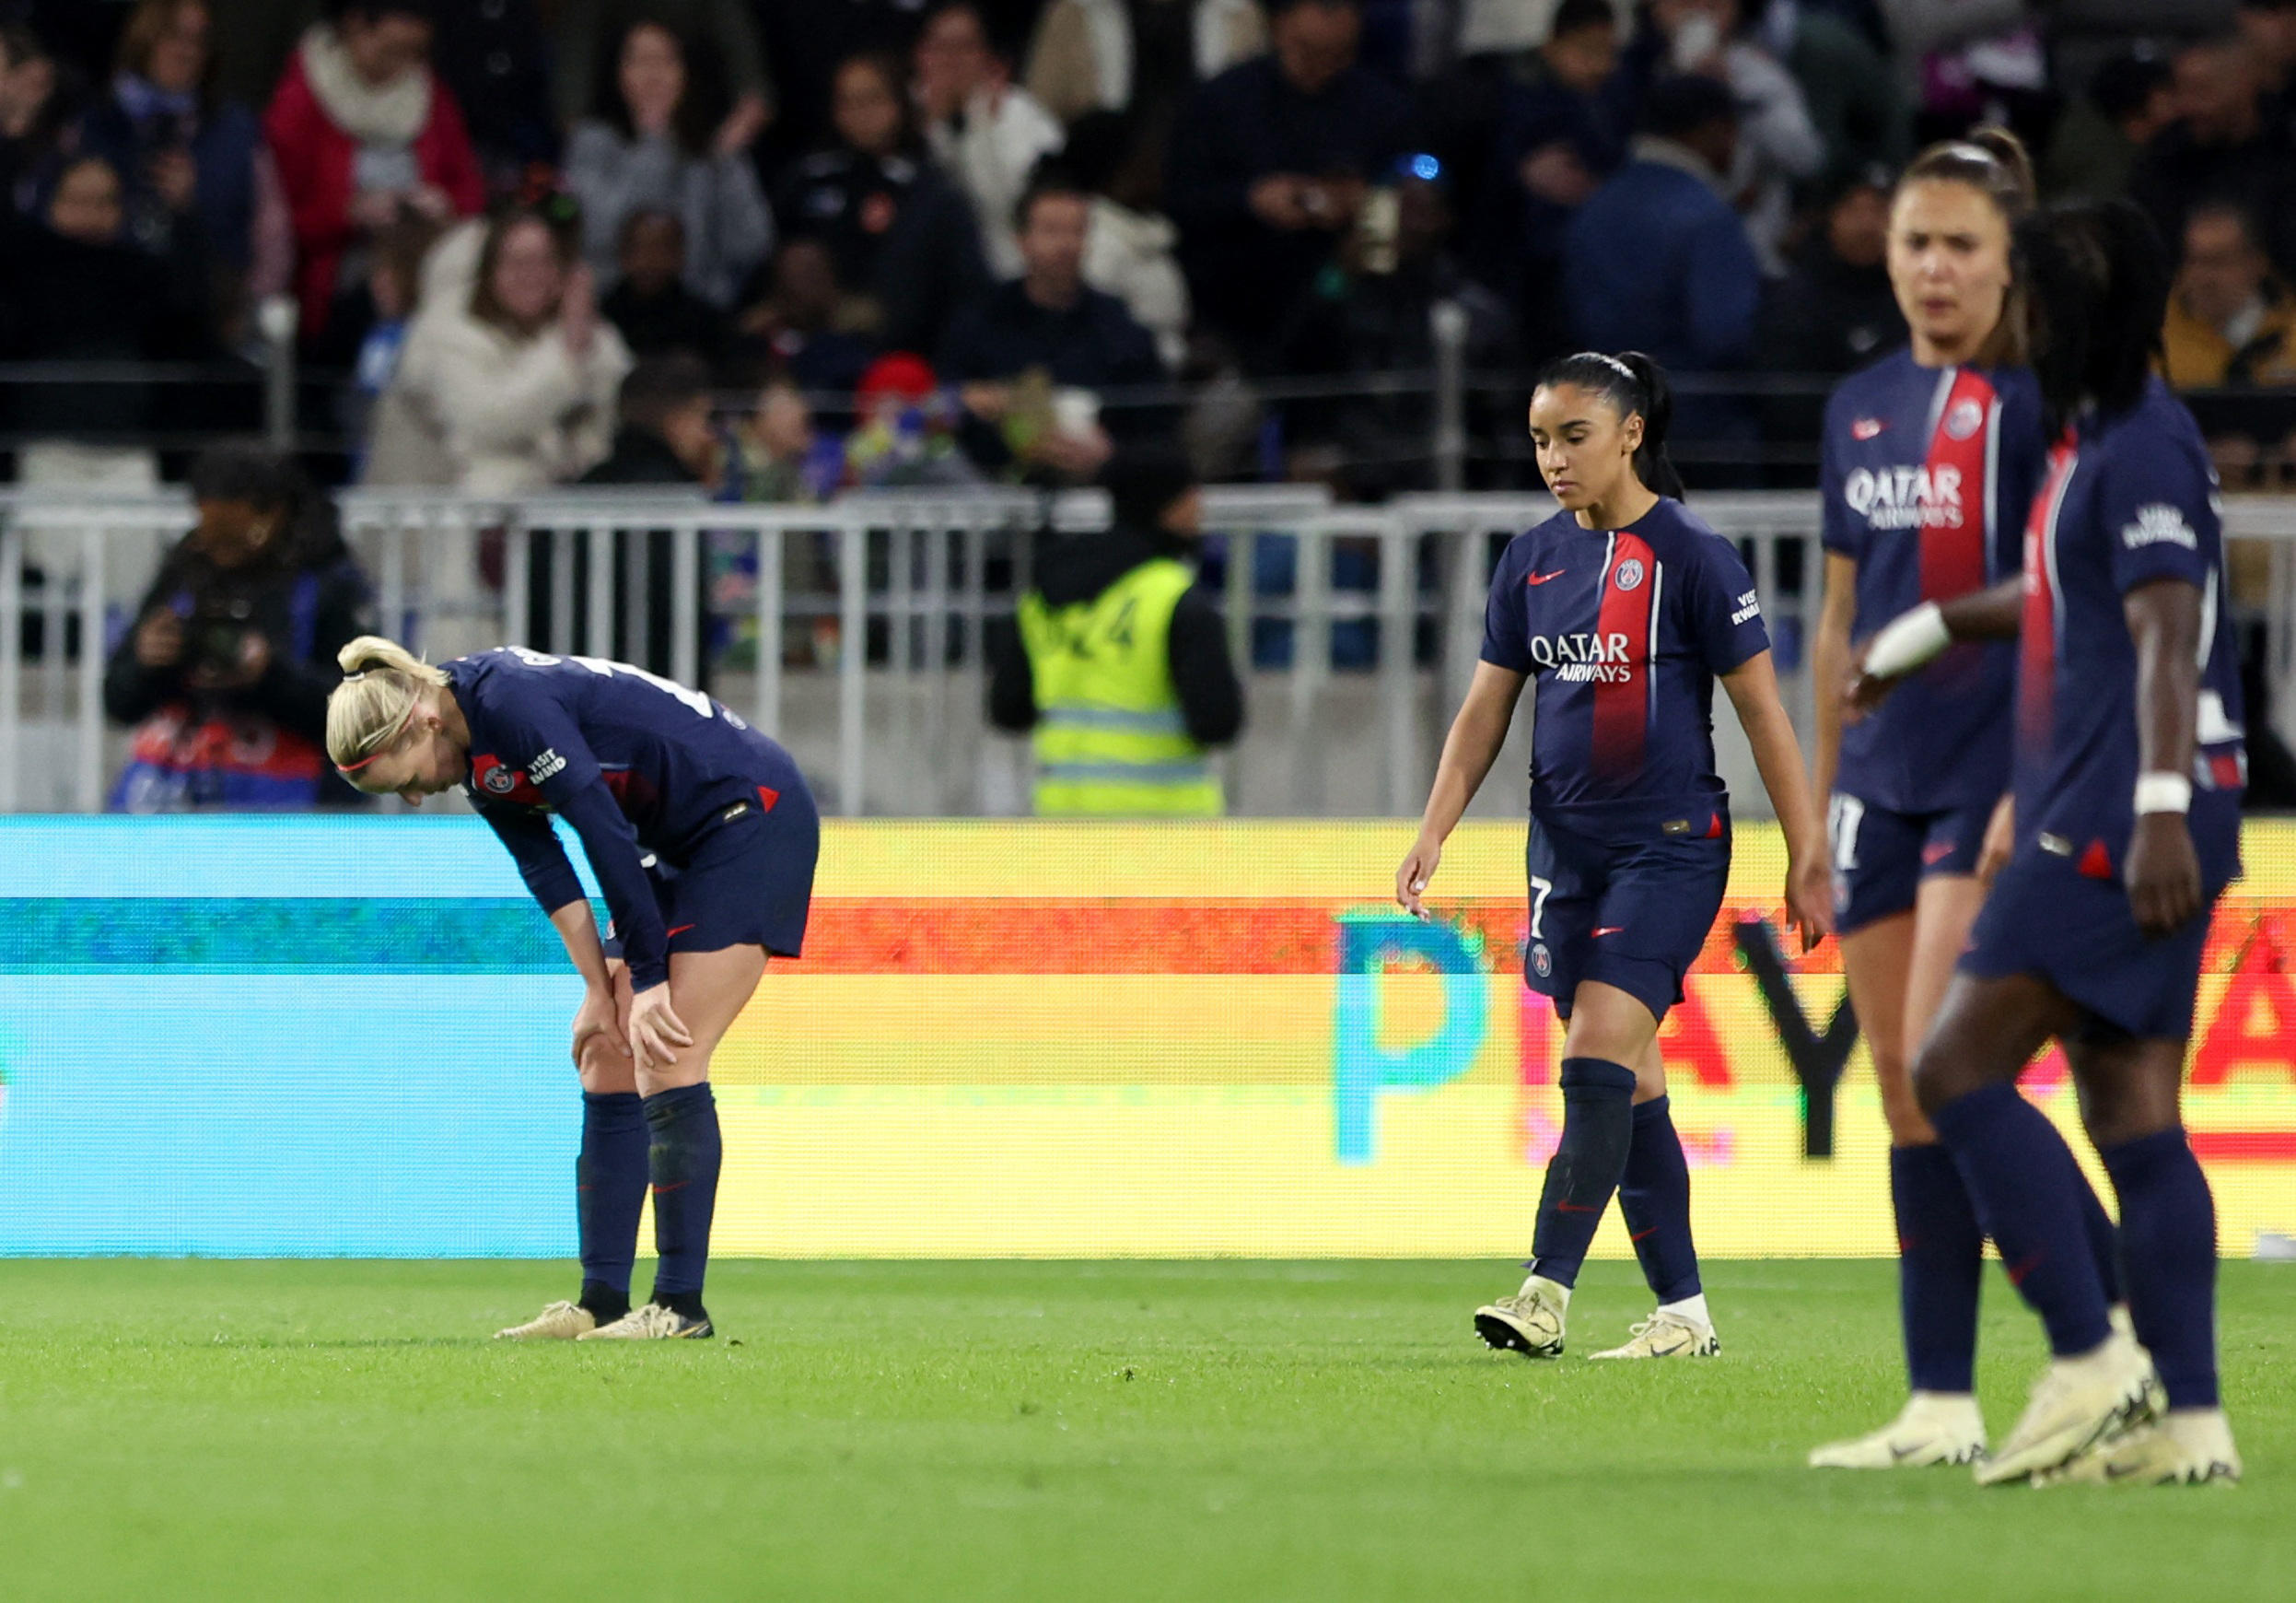 La déception des Parisiennes après le retournement de situation en fin de match. (Manon Cruz / Reuters)